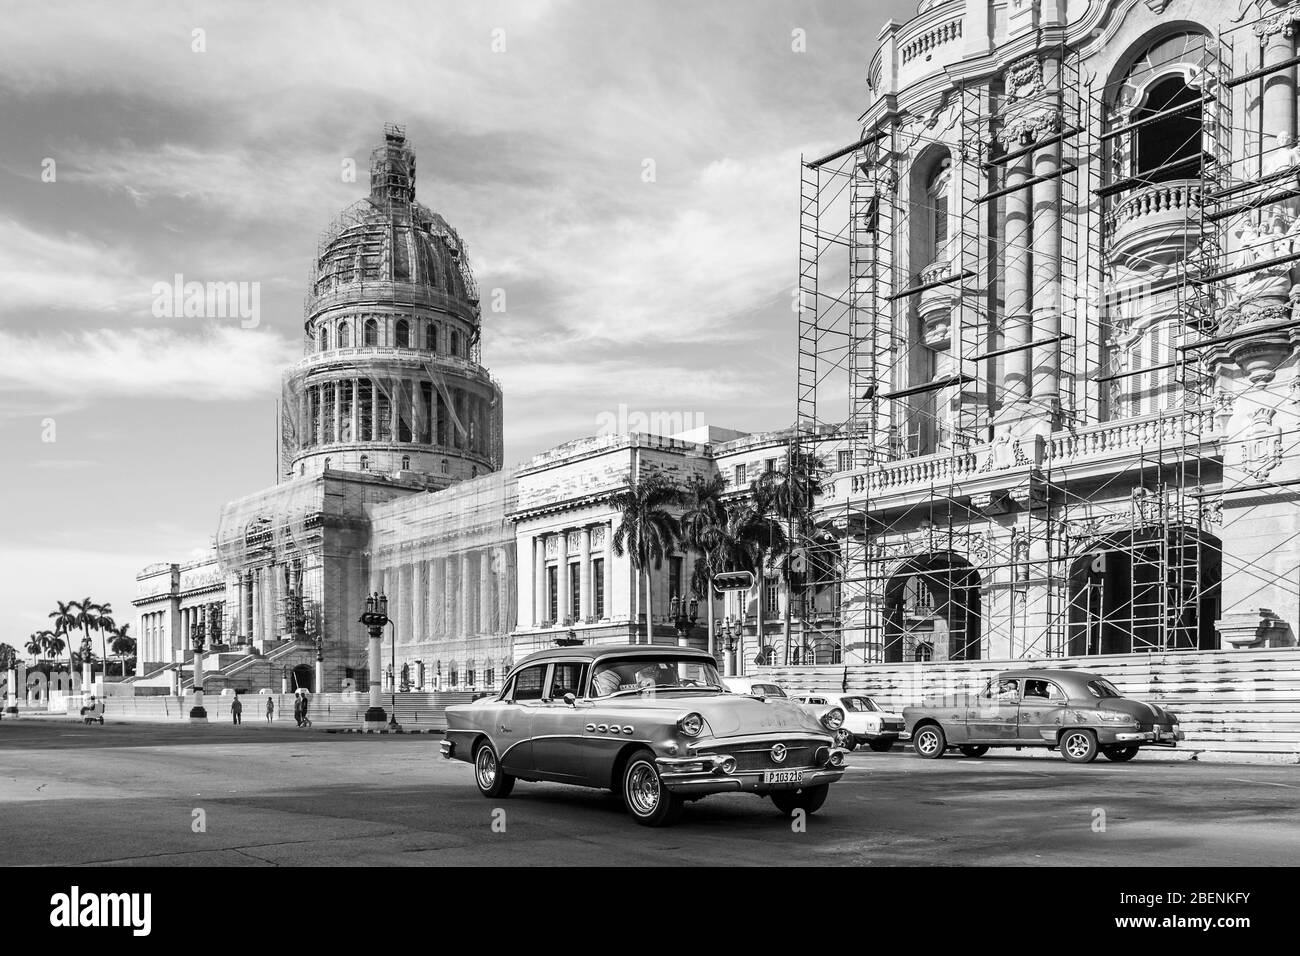 Deux anciens minuteries colorées se déplacent dans des directions opposées devant El Capitolio, ou le bâtiment du Capitole national à la Havane, Cuba, en août 2014. Banque D'Images